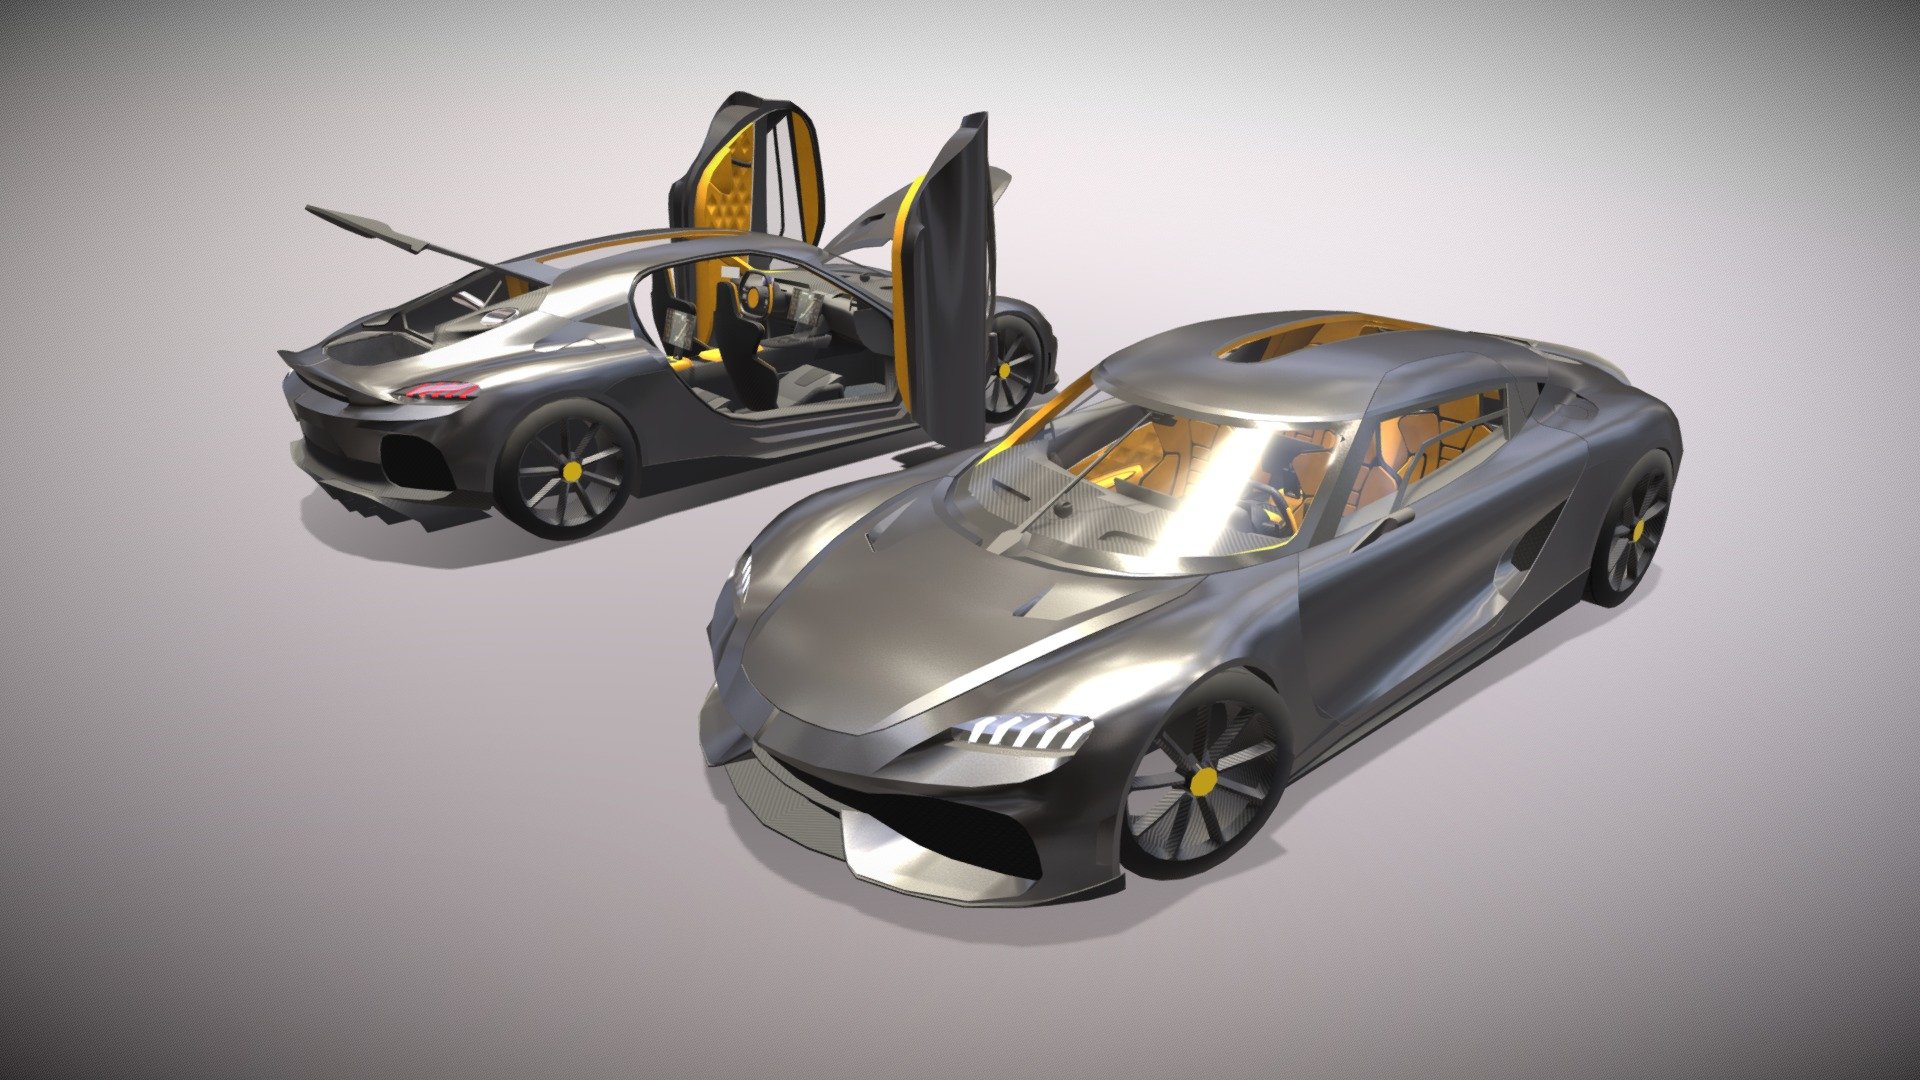 Low Poly 3D model Koenigsegg Gemera in Car Simulator 2 3d model